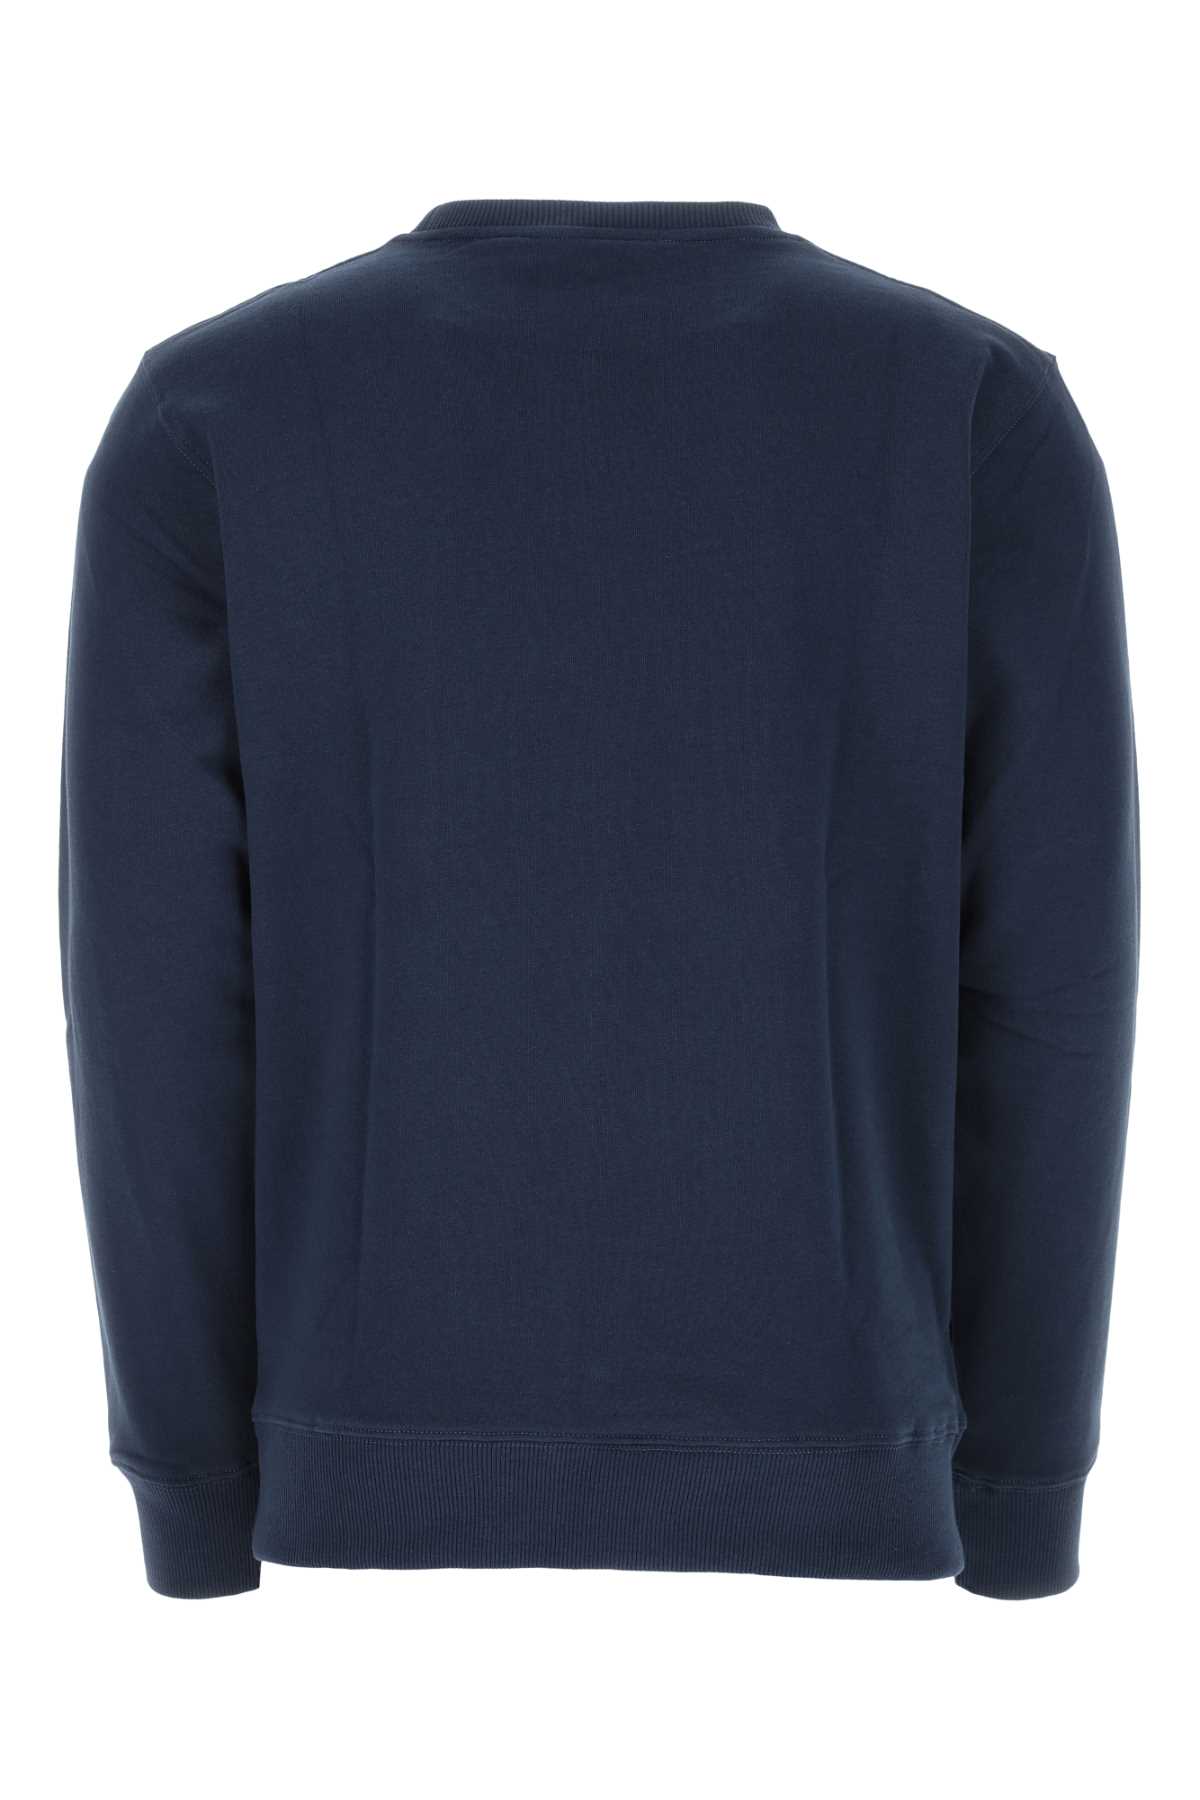 Shop Etudes Studio Blue Cotton Sweatshirt